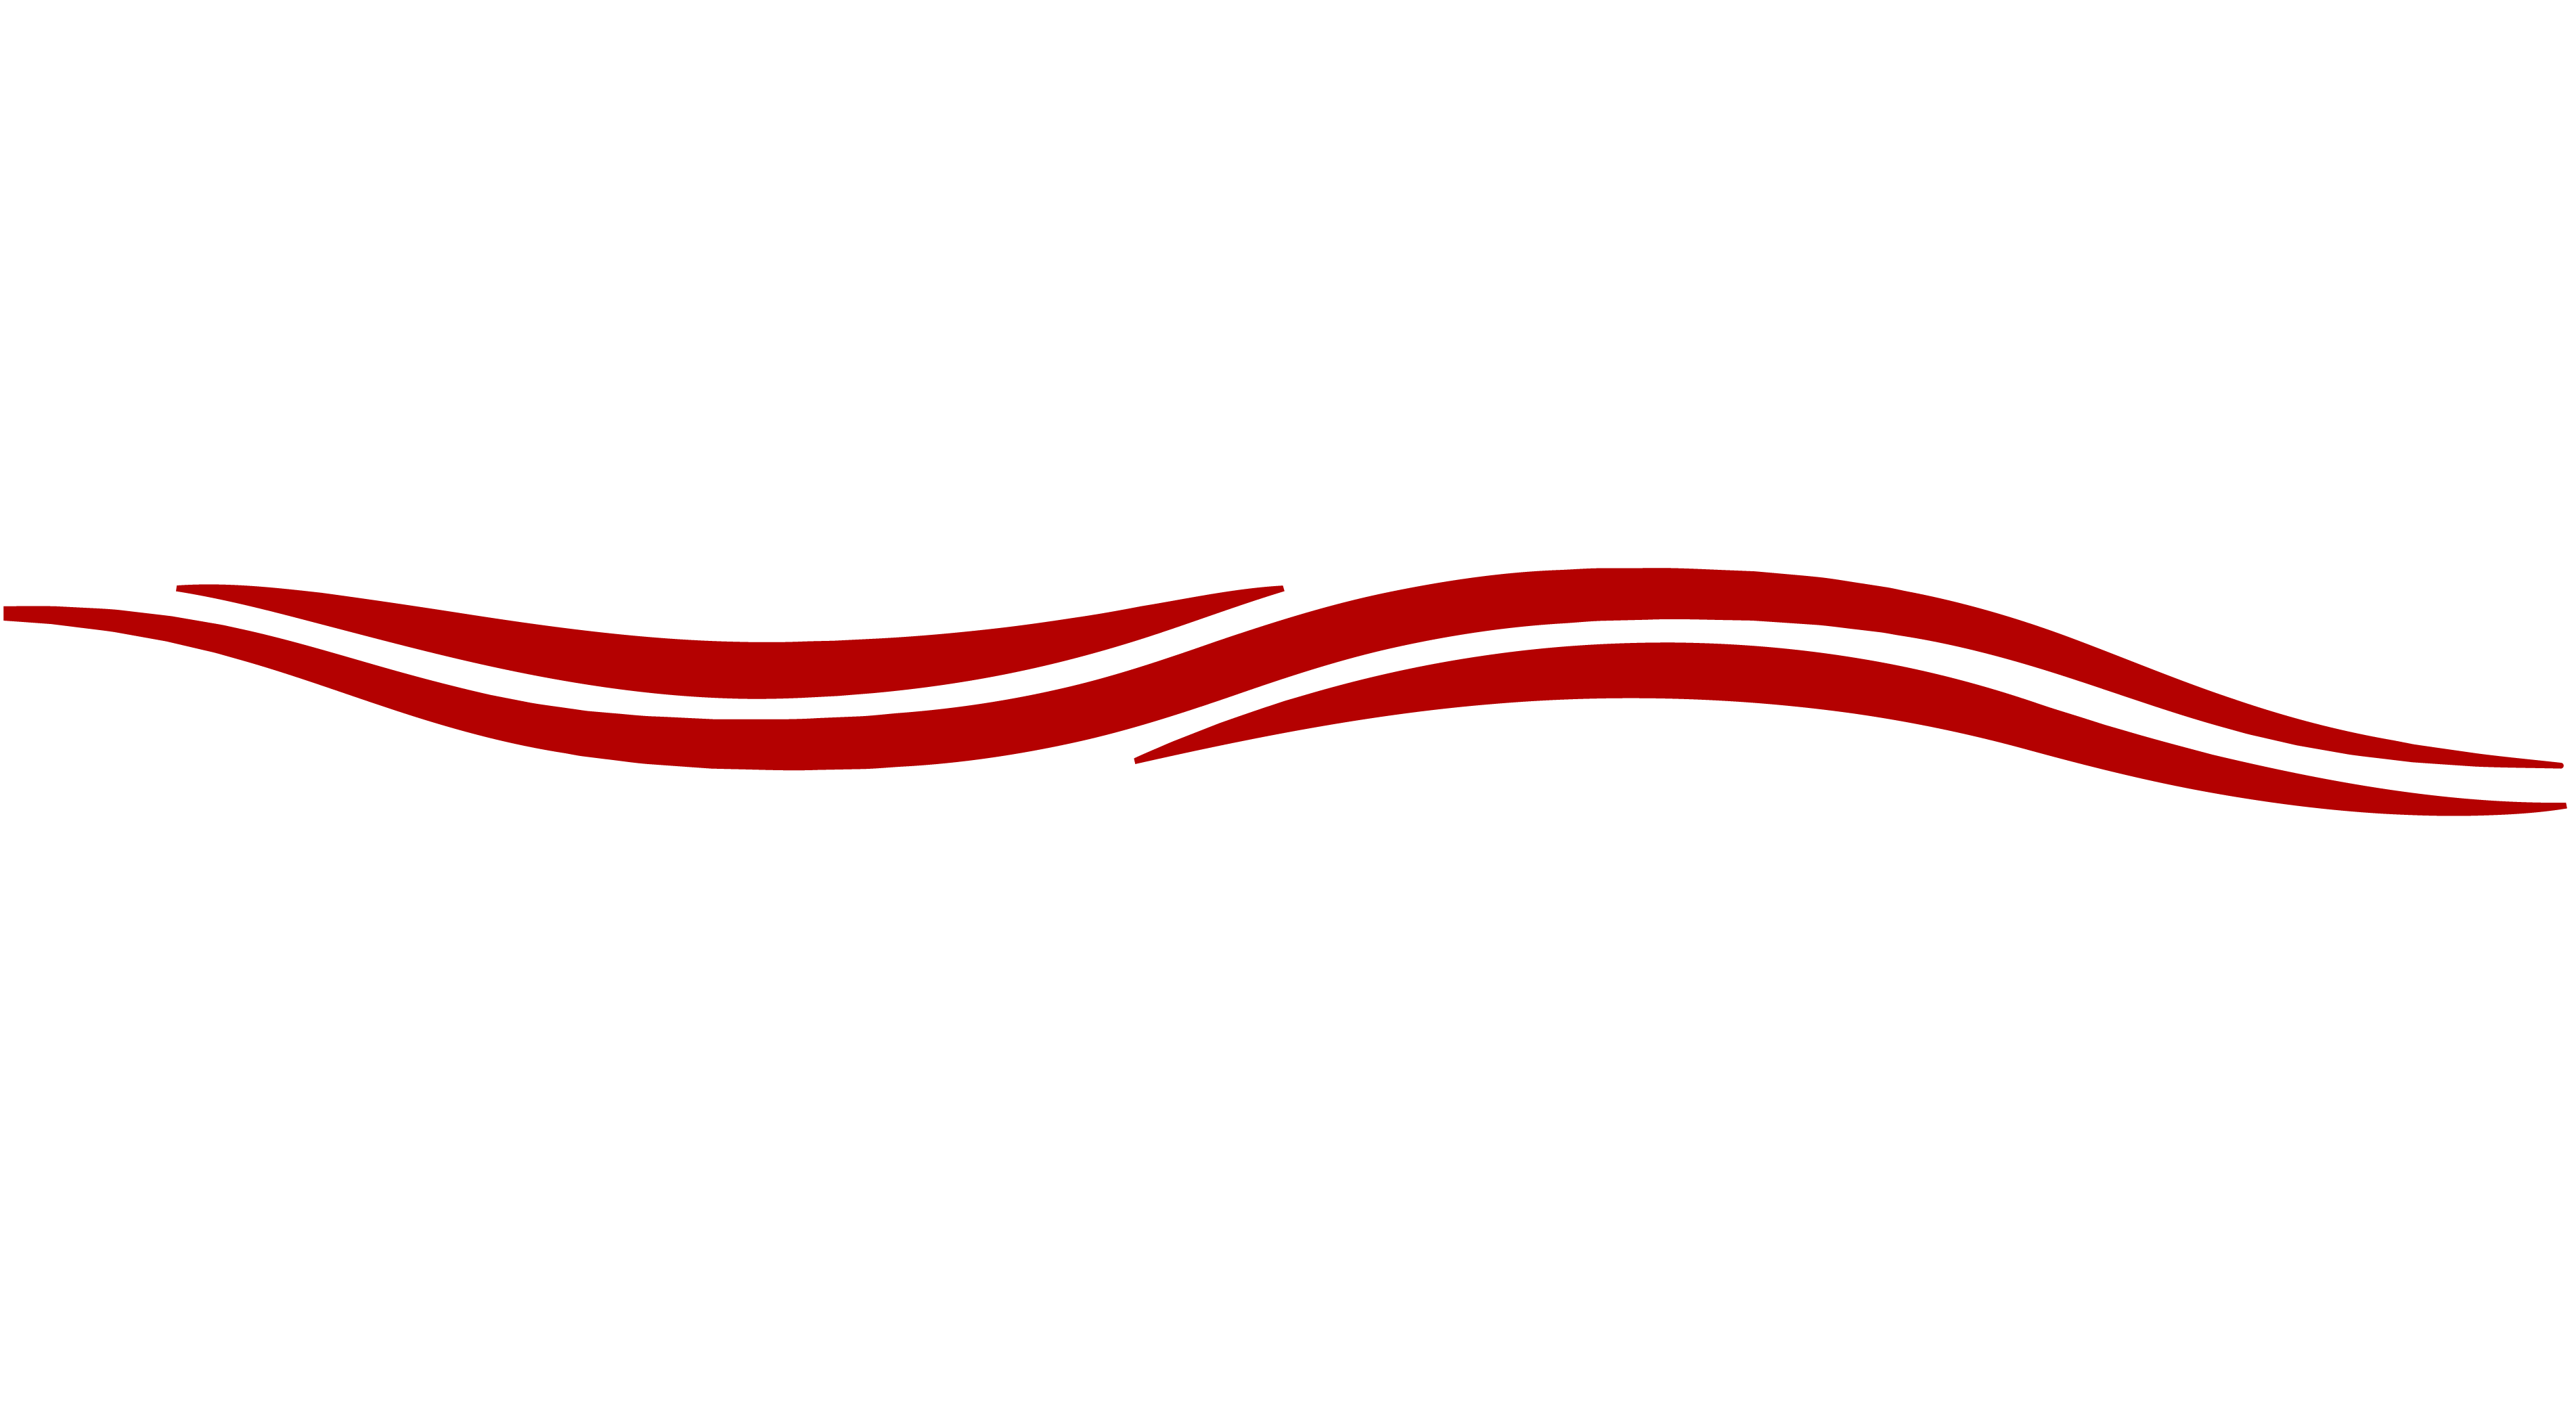 Lake Conroe Group